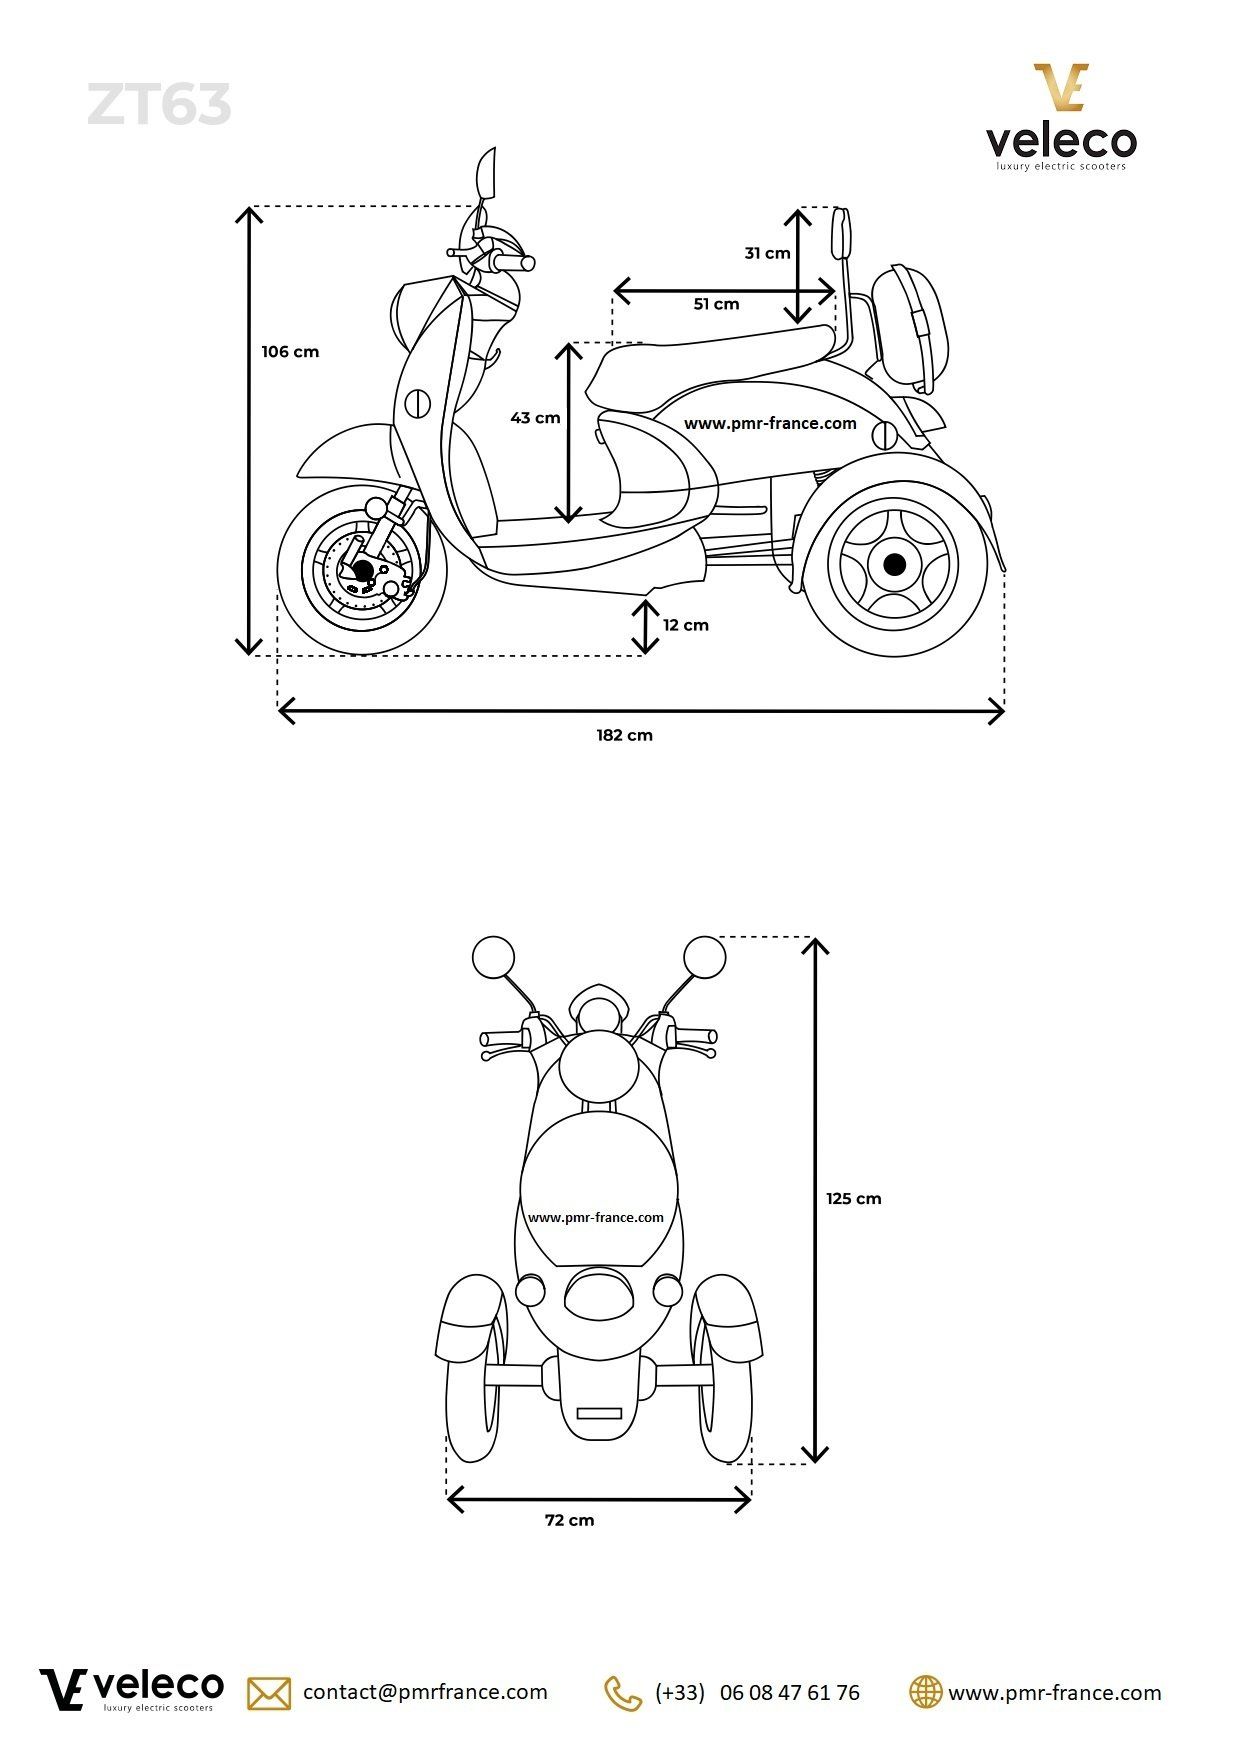 Scooter électrique ZT 63 à 3 roues pour PMR - Mobilité et autonomie améliorées